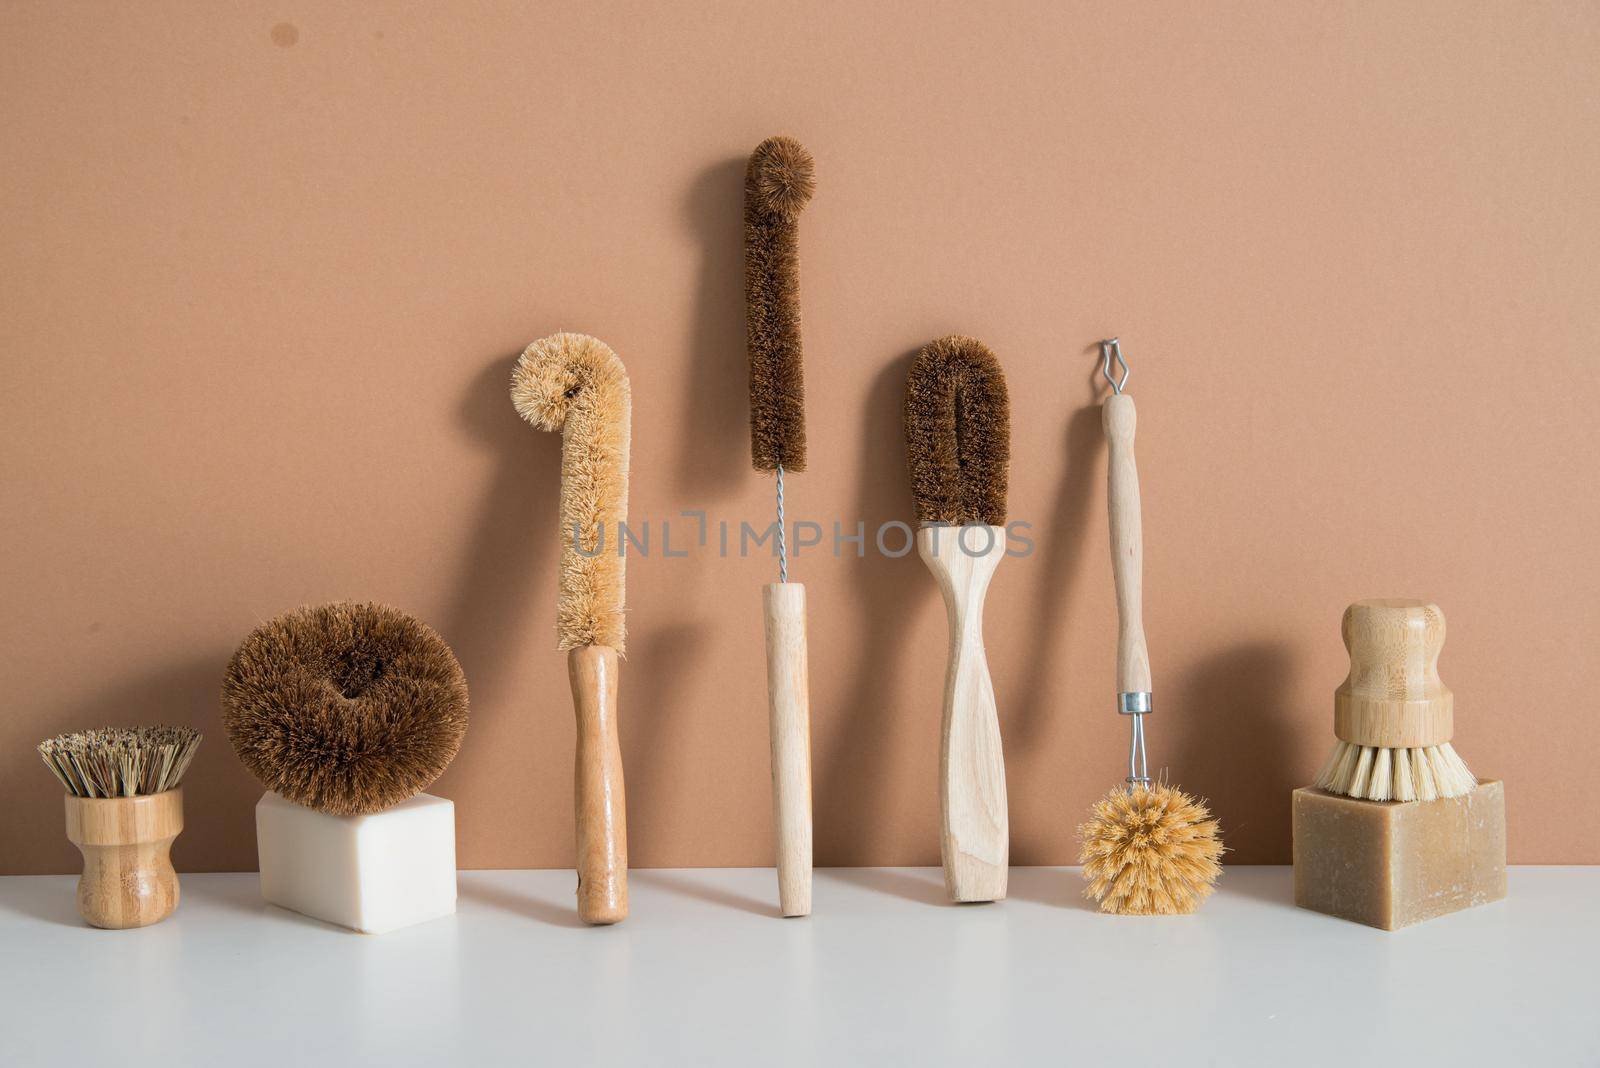 set of zero waste bamboo brushes for dishwashing. High quality photo